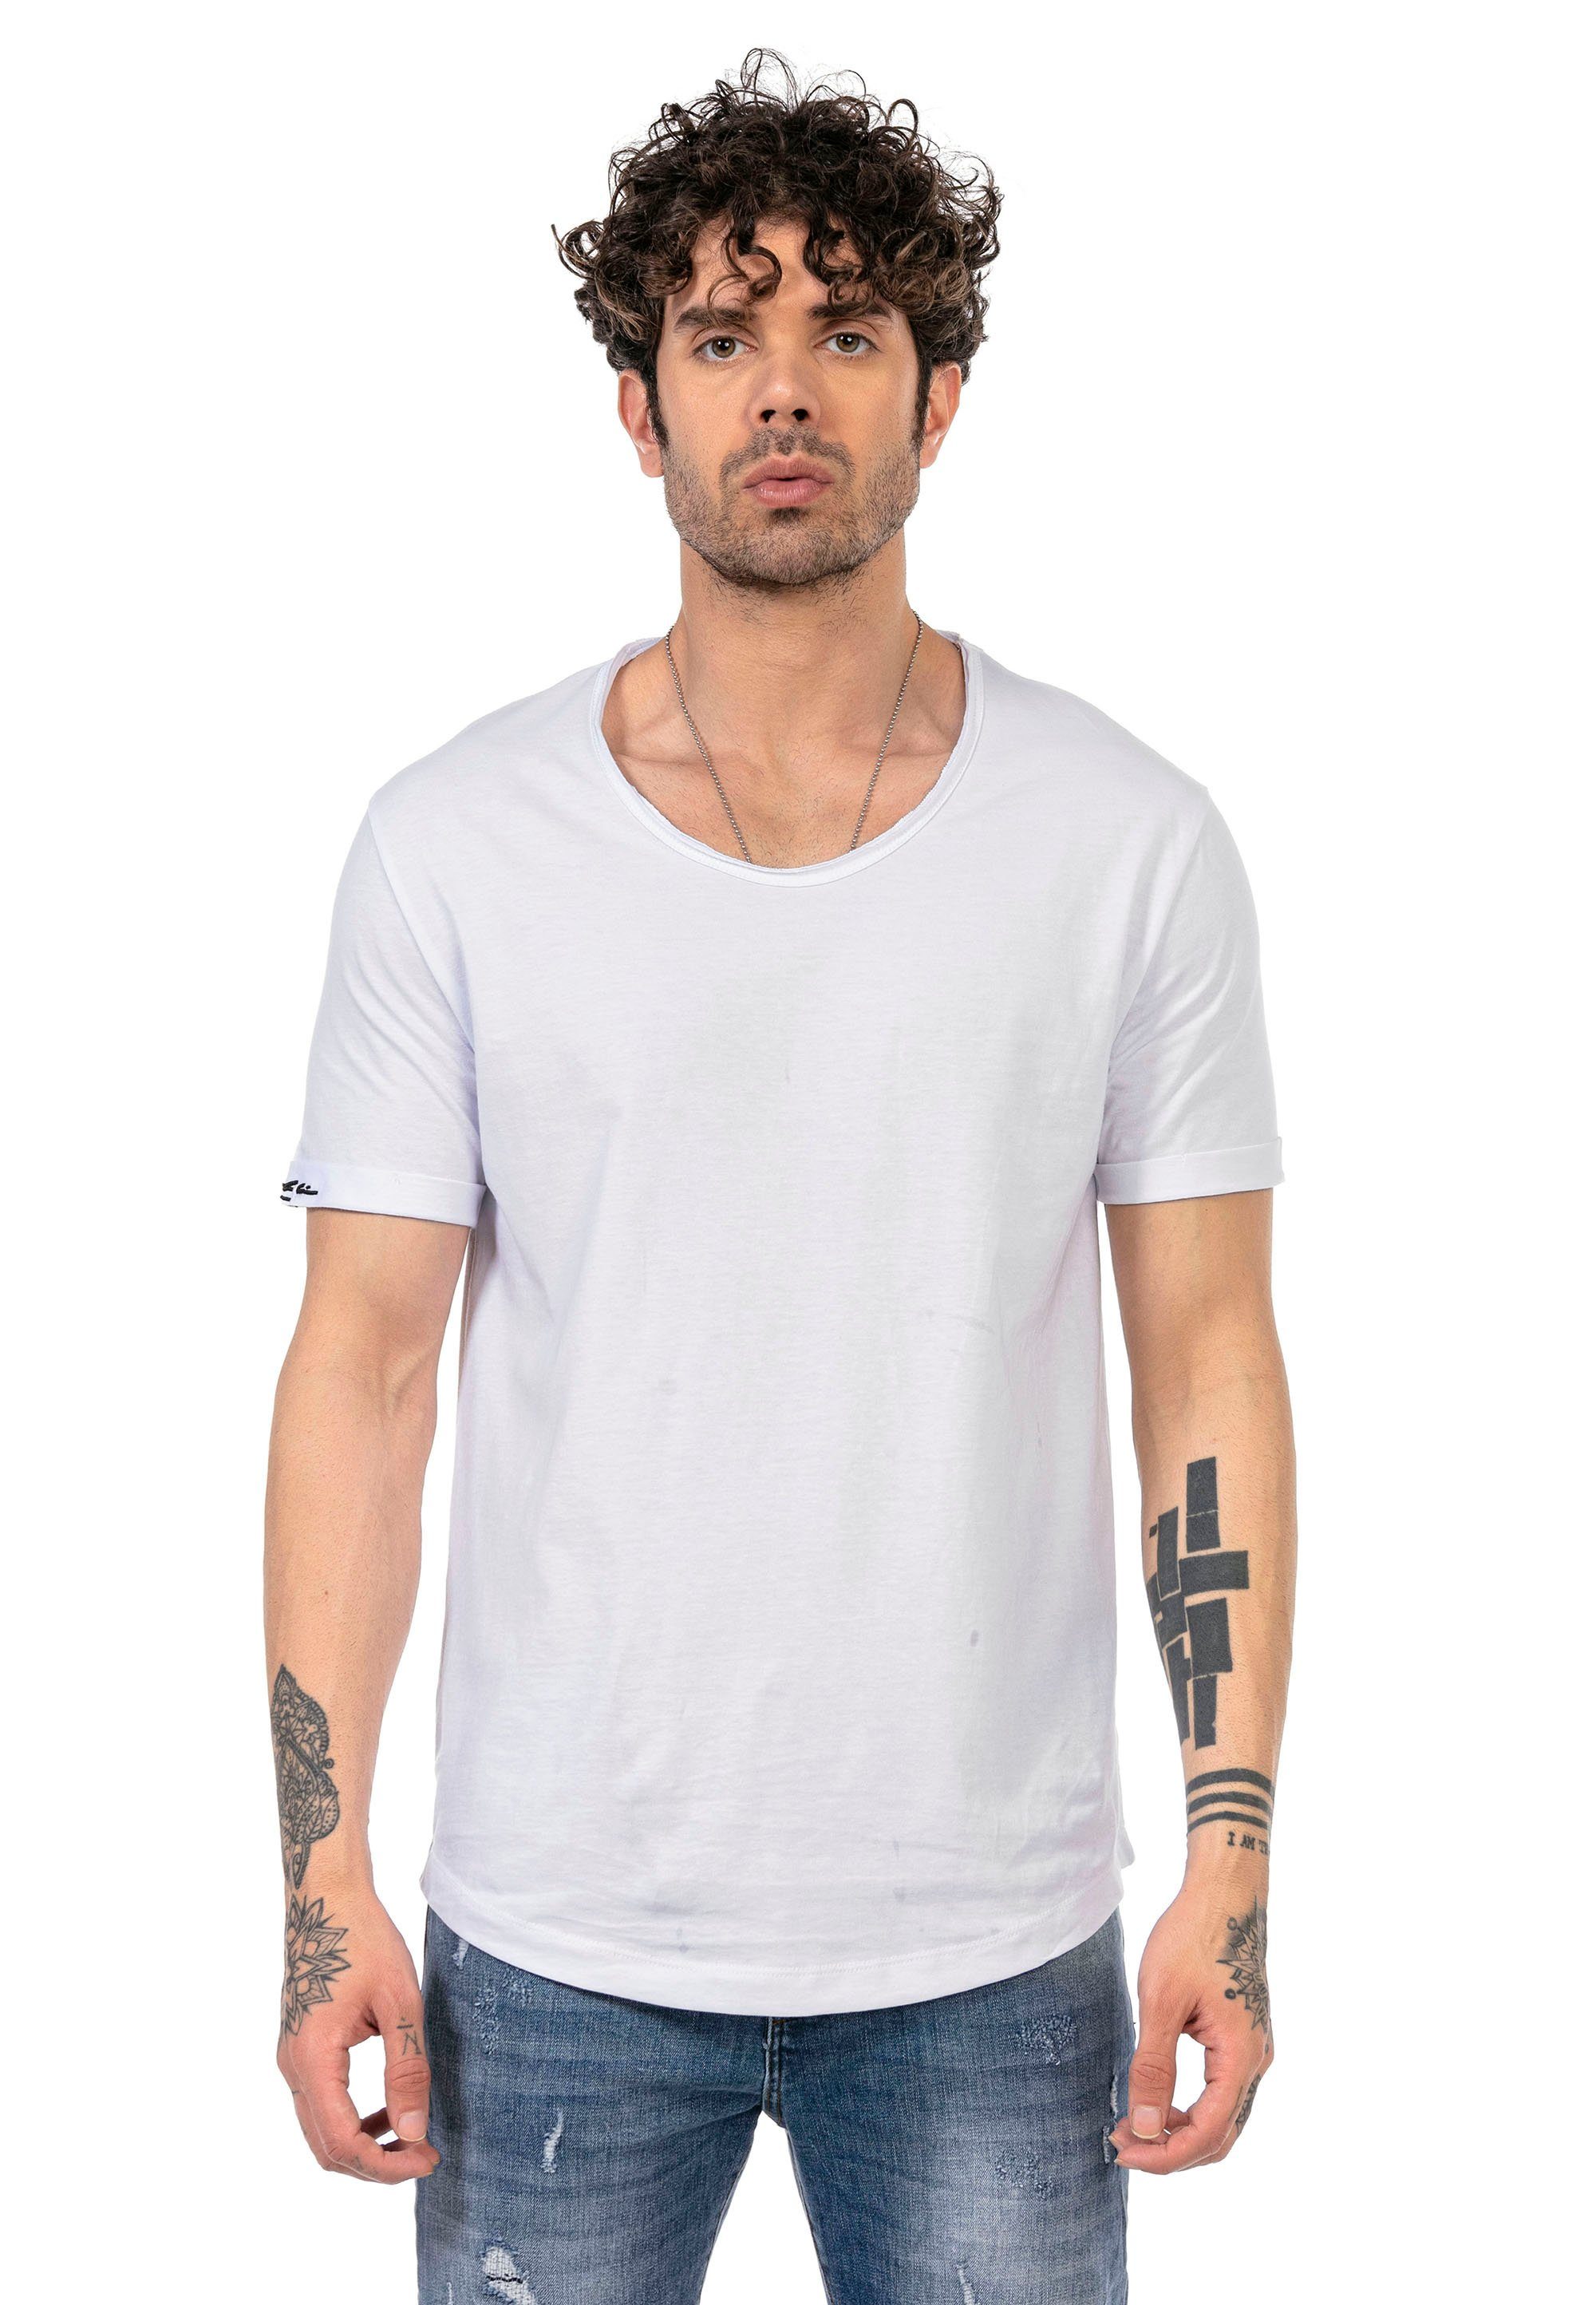 RedBridge T-Shirt Las Cruces mit weiß Tragekomfort tollem